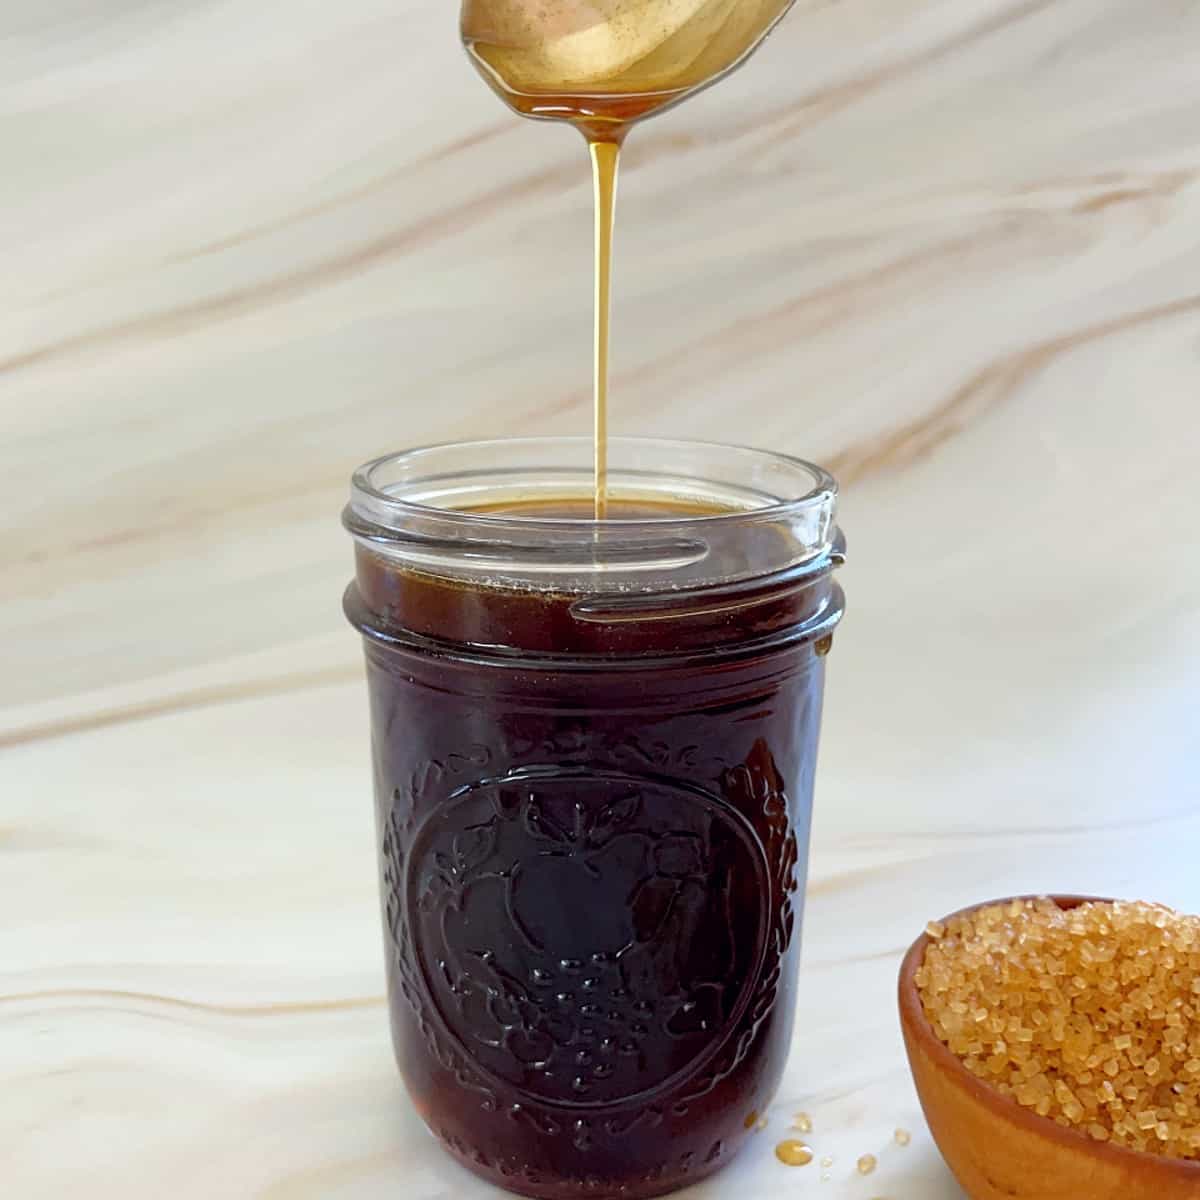 rich demerara syrup dripping off a spoon into a jar.